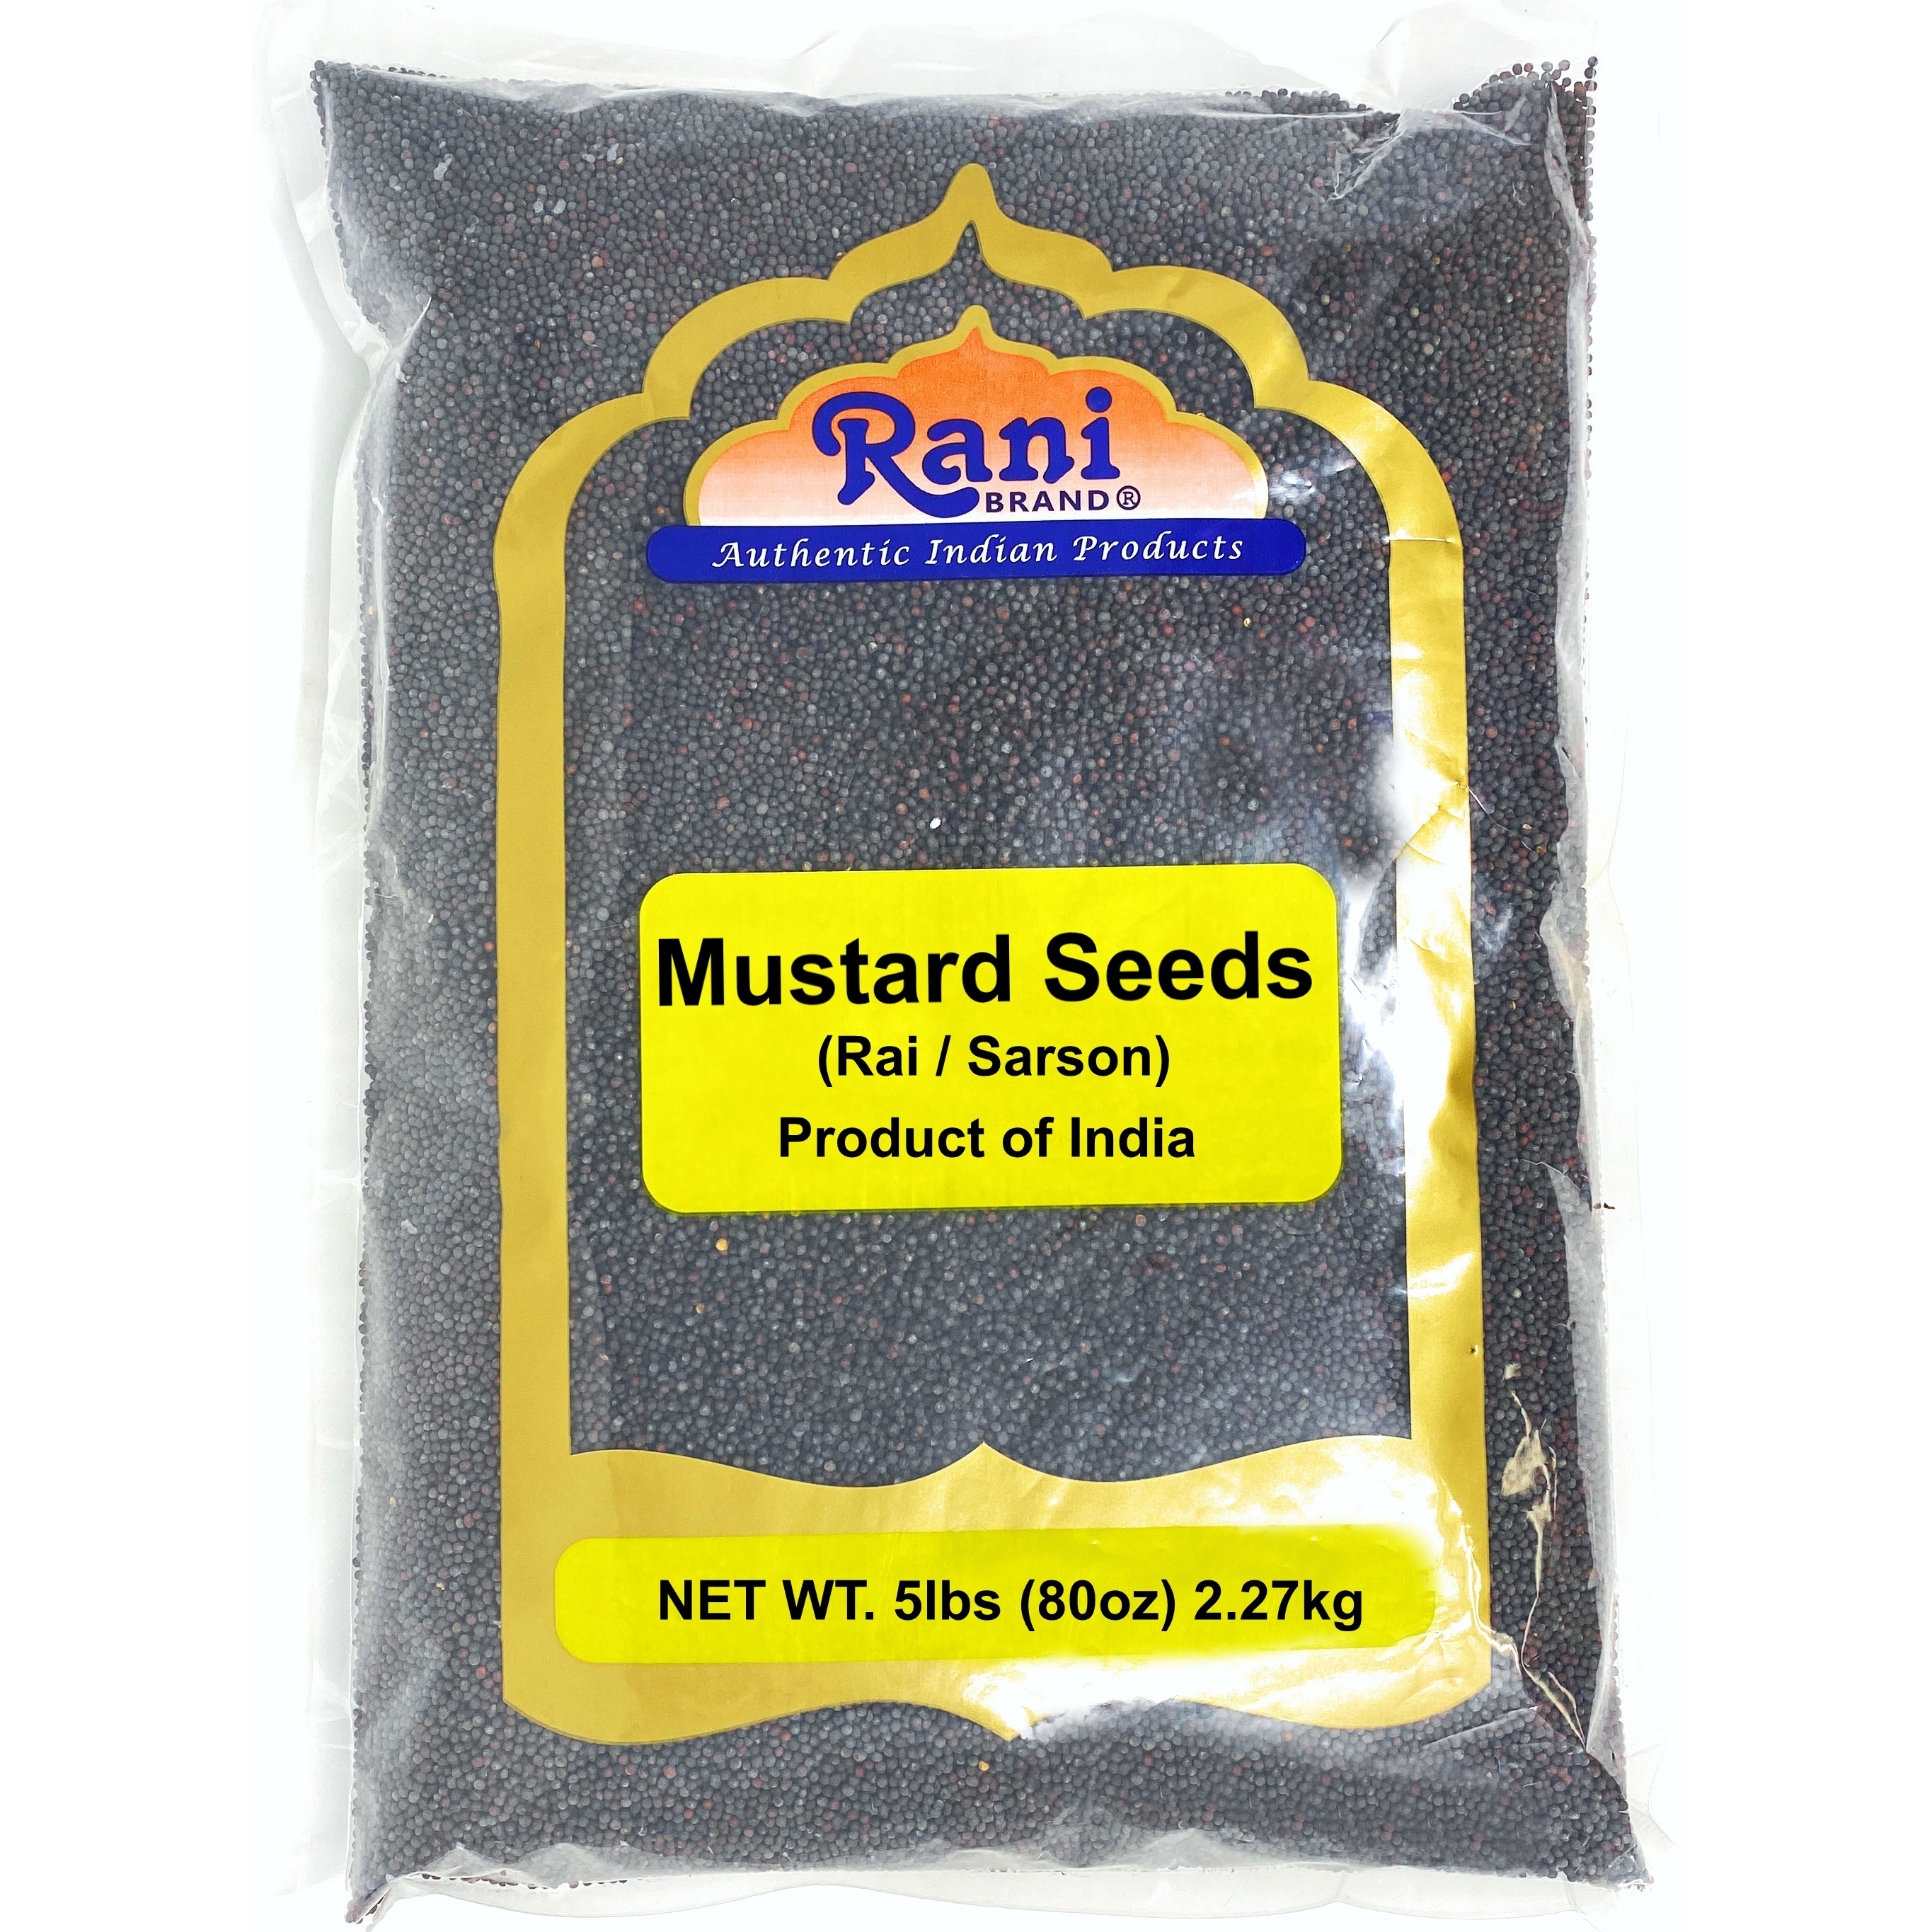 Rani Black Mustard Seeds Whole Spice (Rai Sarson) 5 Pound Bulk, 80oz (5lbs), All Natural ~ Gluten Friendly Ingredients | NON-GMO | Vegan | Indian Origin